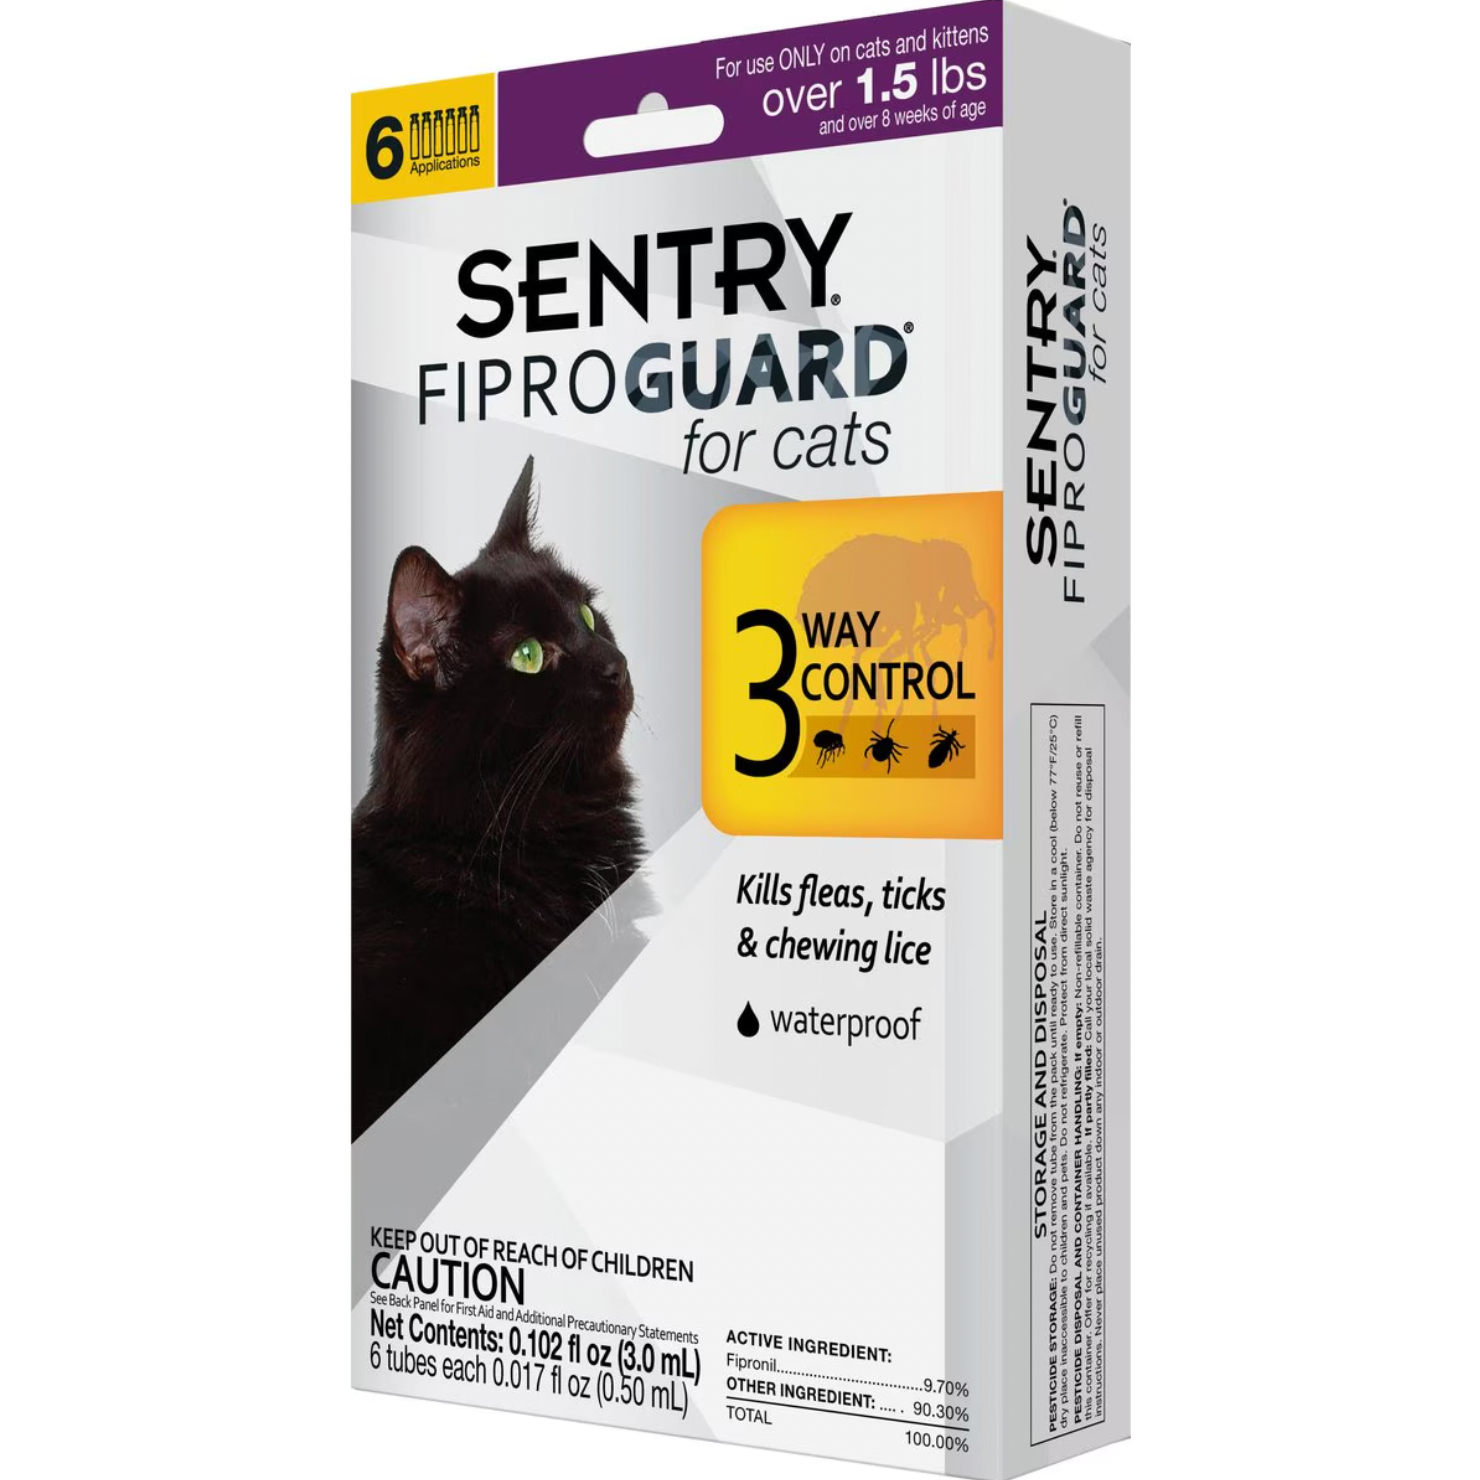 Sentry FiproGuard Flea & Tick Spot Treatment for Cats